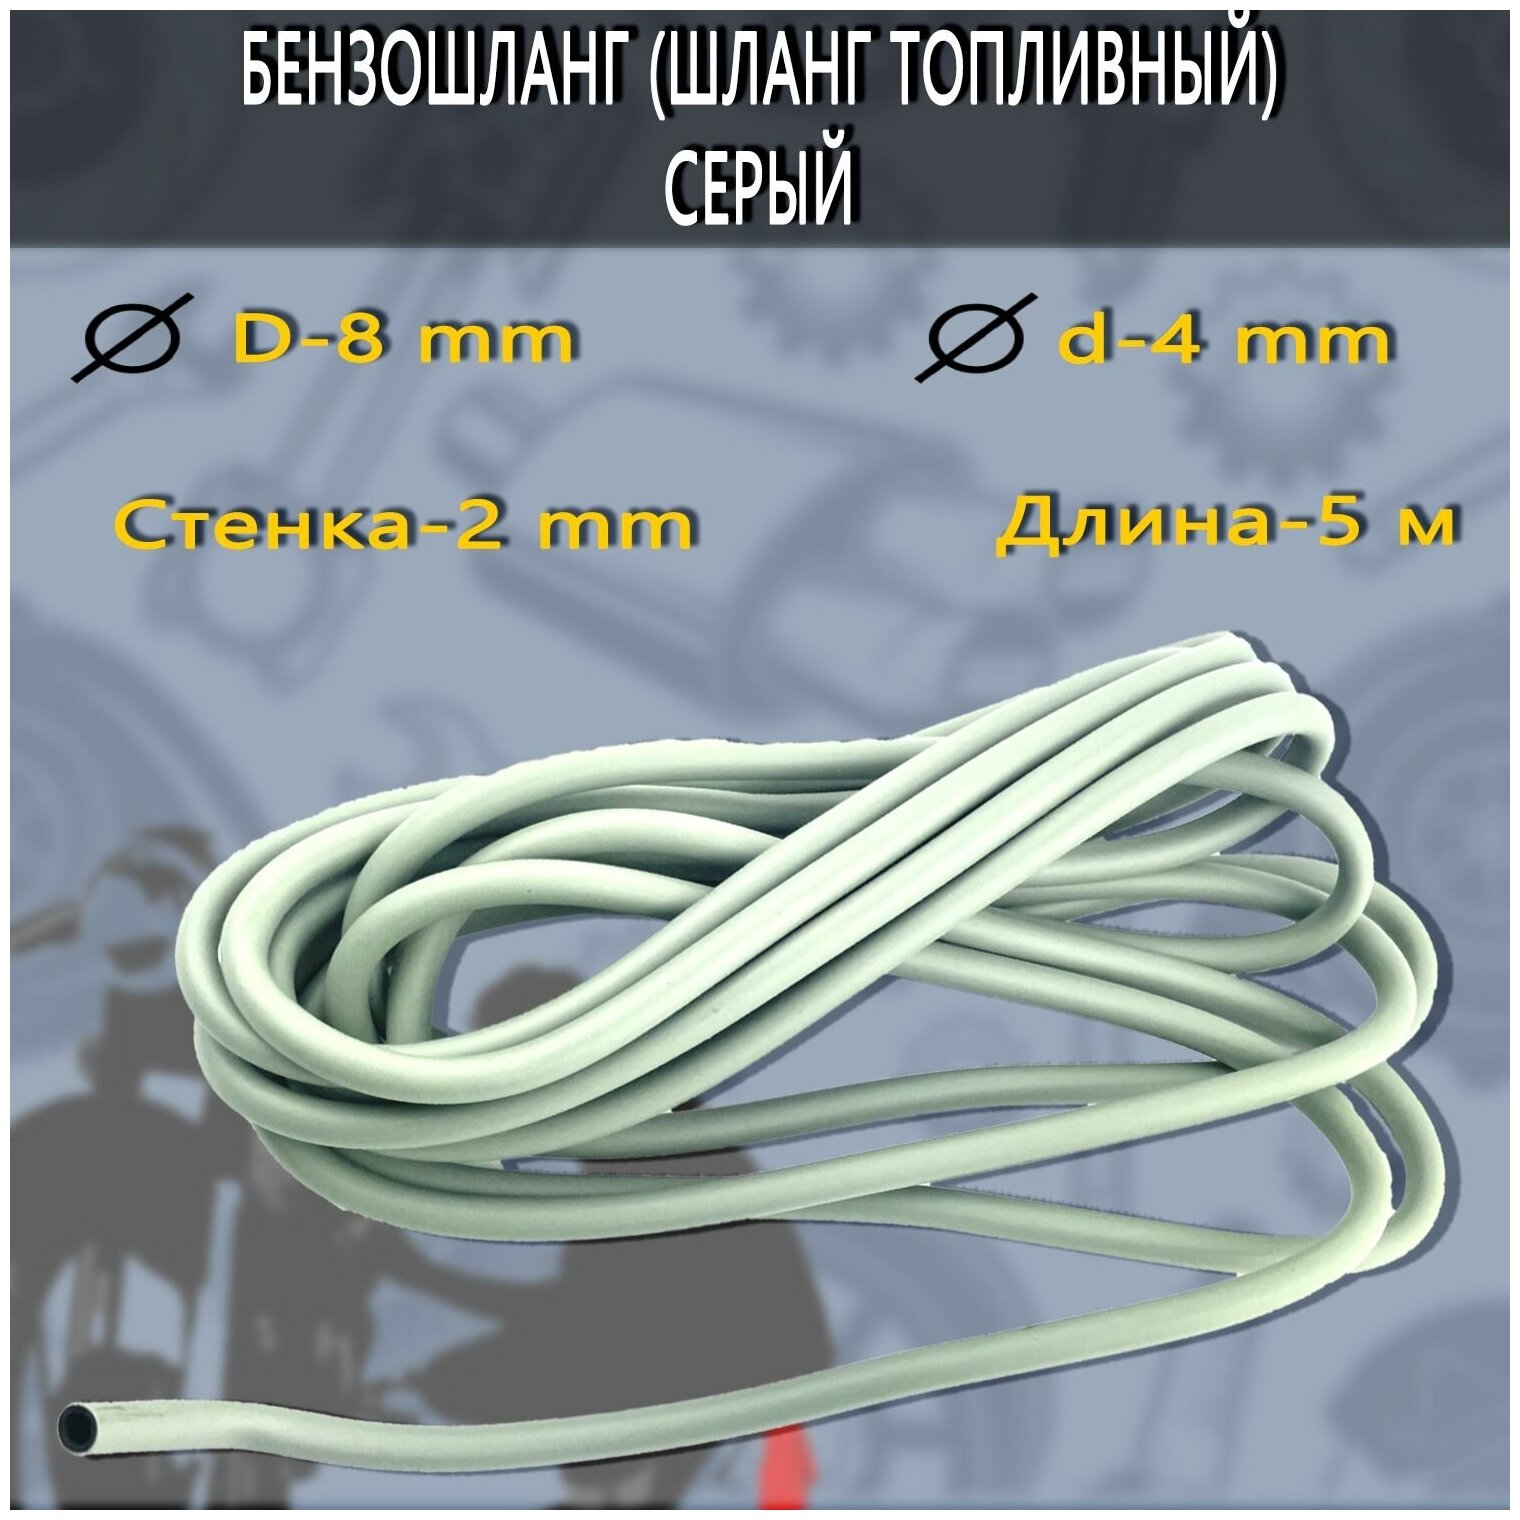 Бензошланг (шланг топливный) серый (D-8/d-4 мм) 1 метр - фотография № 1